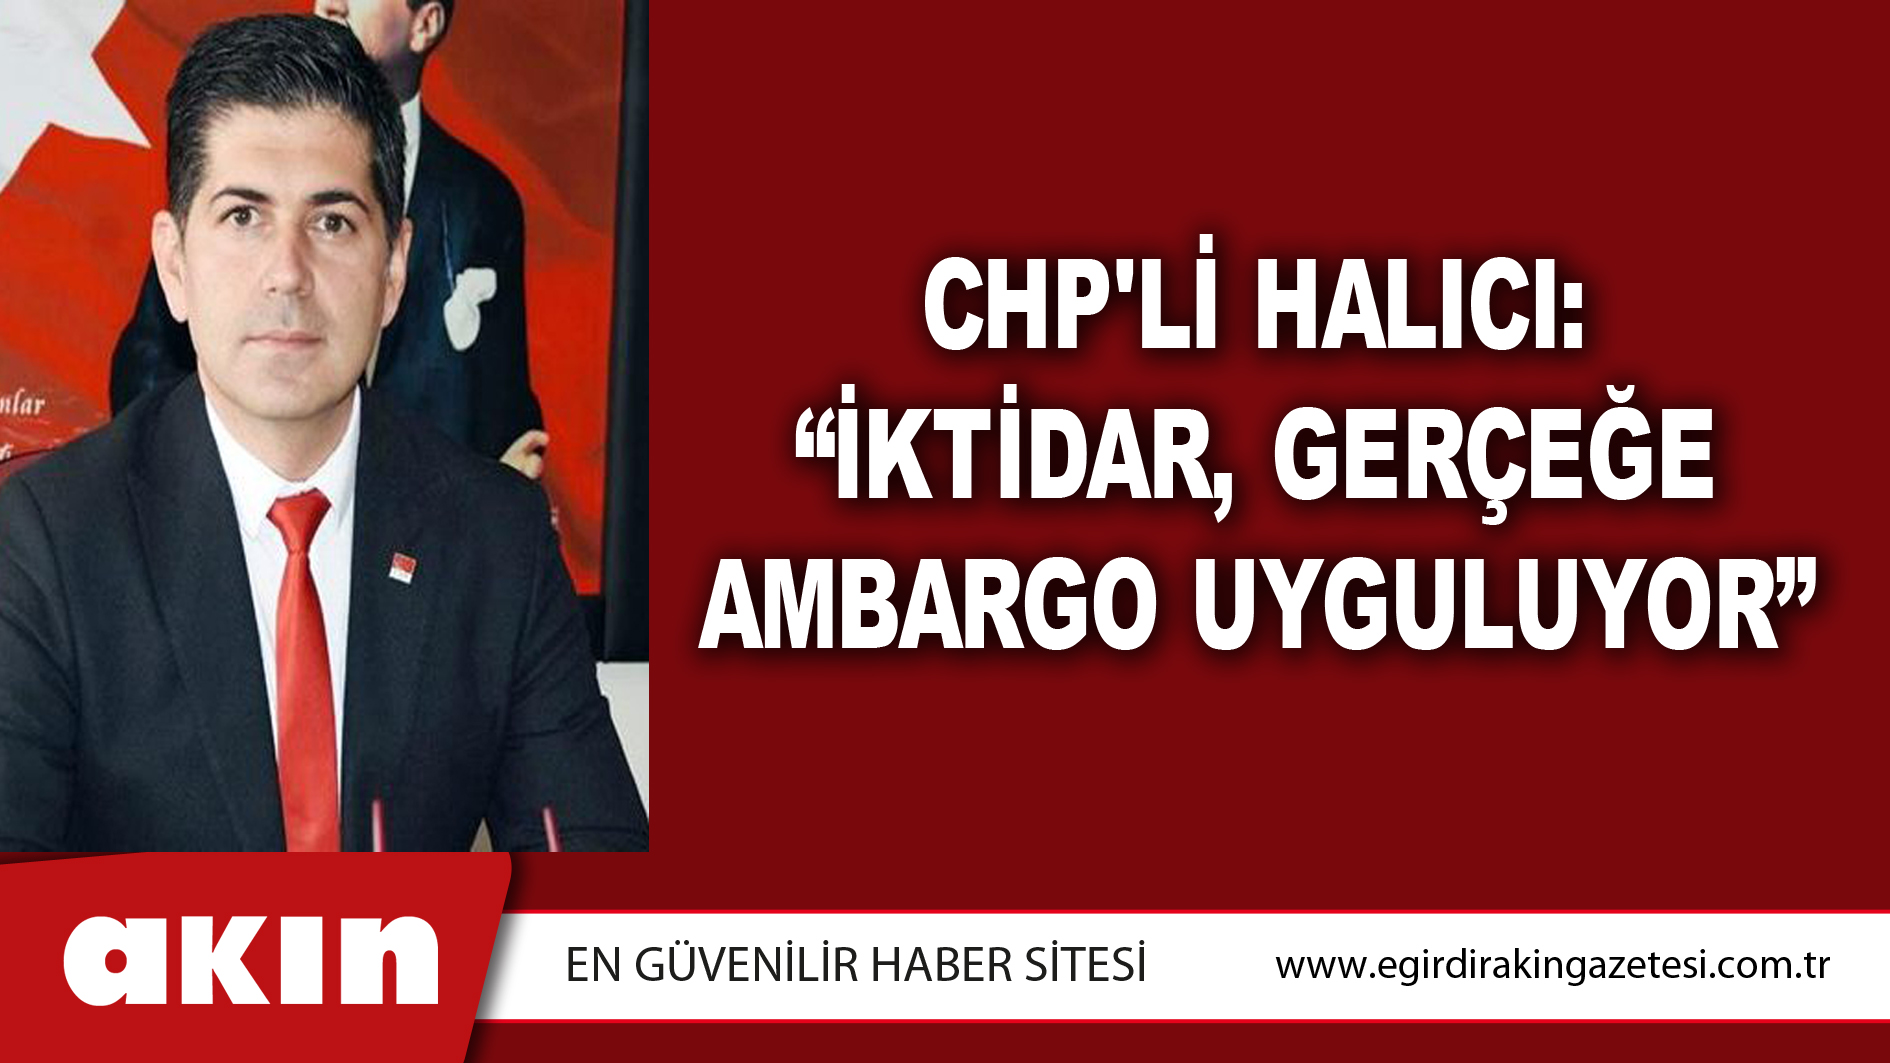 CHP'li Halıcı: “İktidar, Gerçeğe Ambargo Uyguluyor”